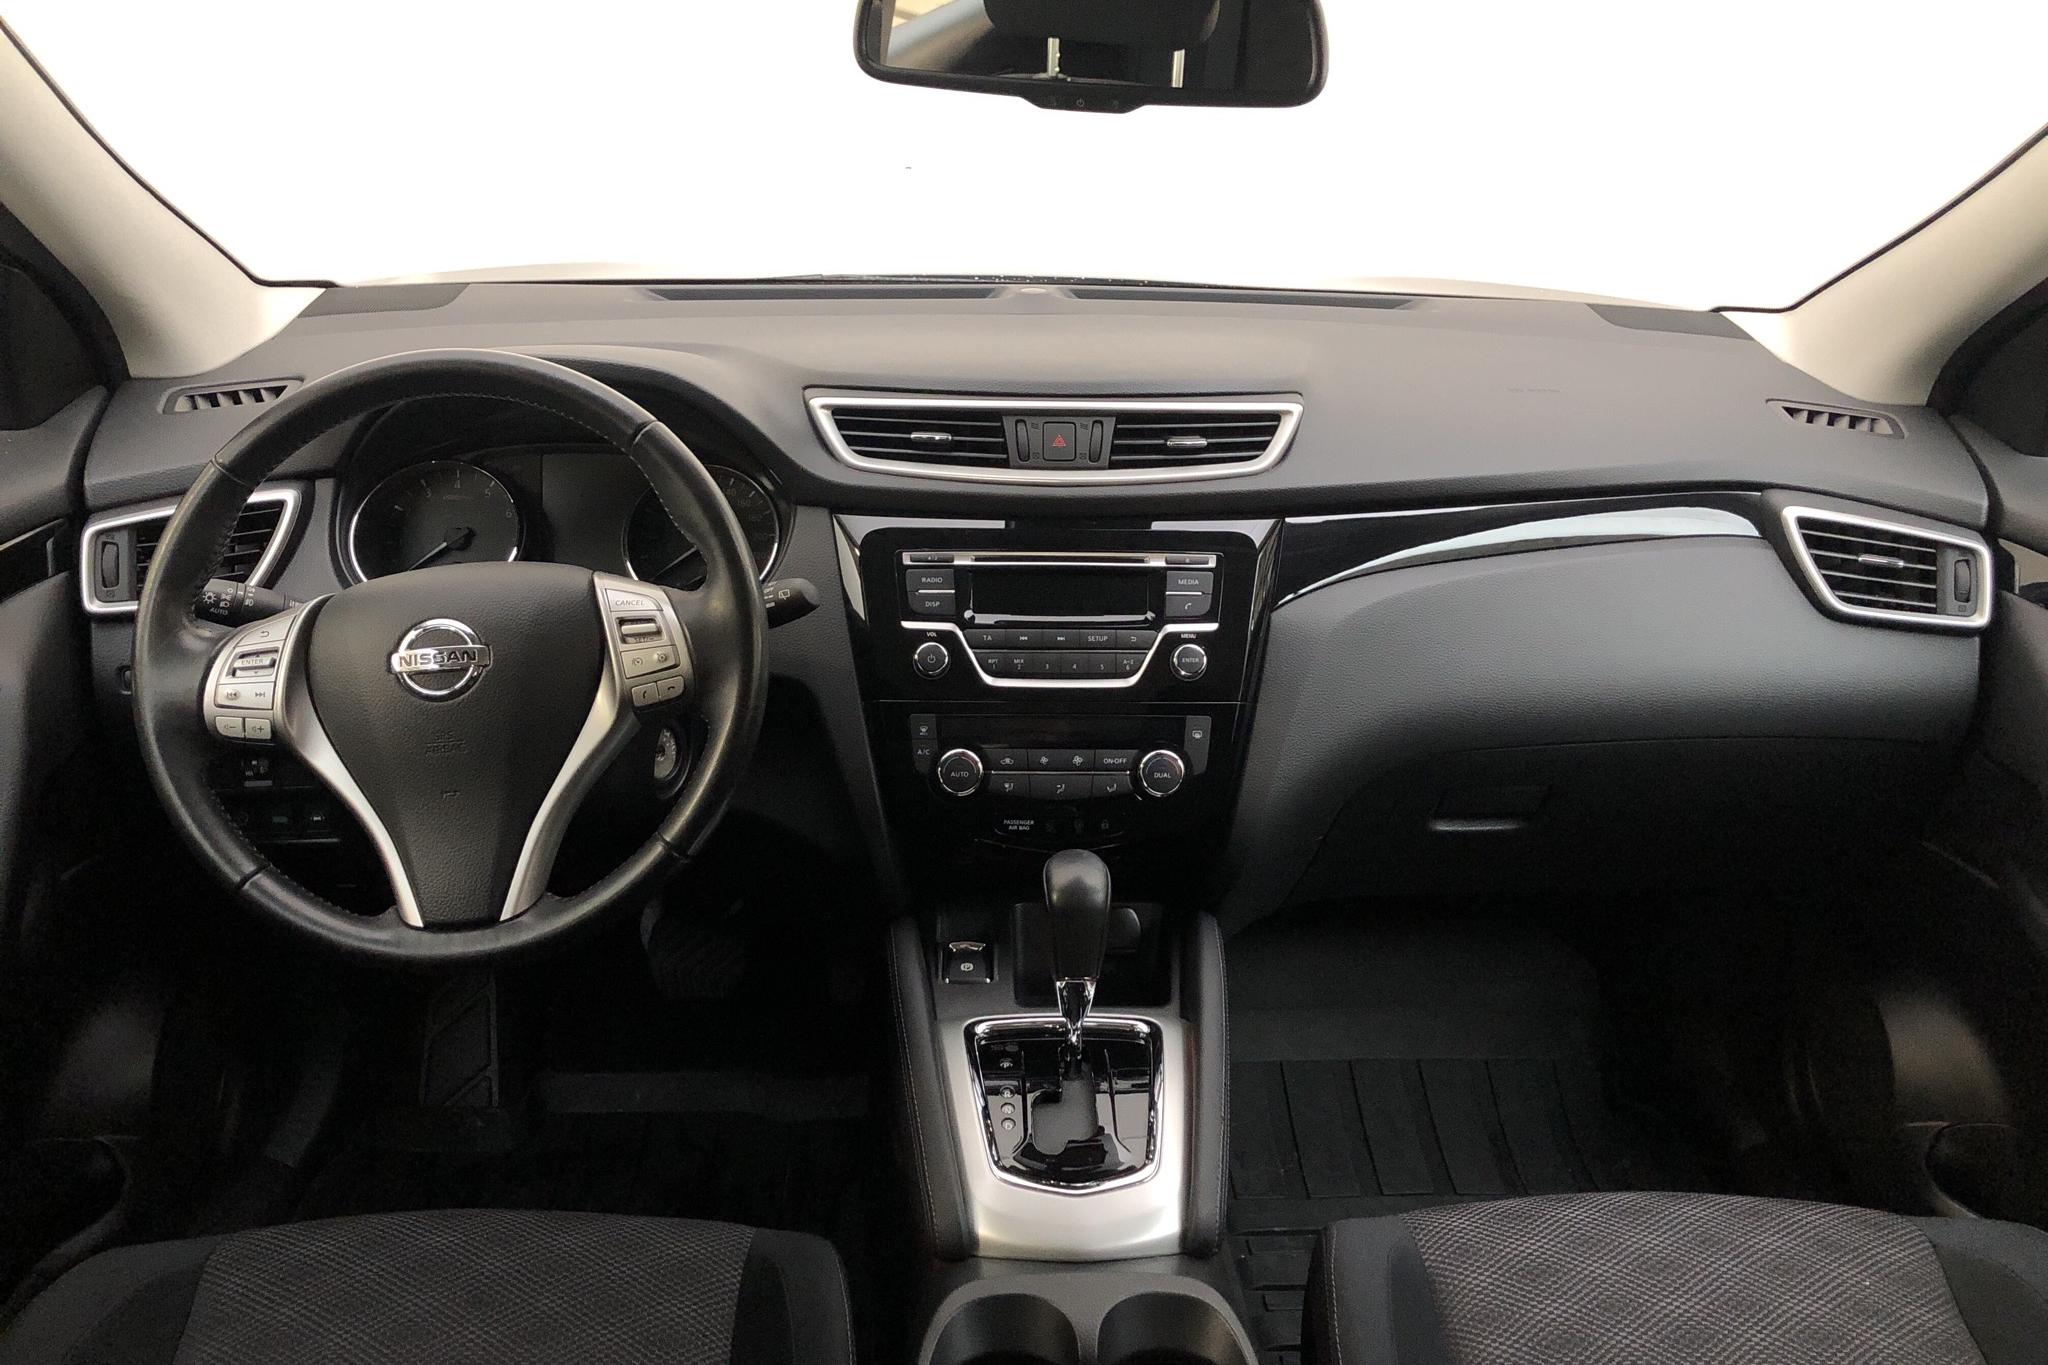 Nissan Qashqai 1.2 (115hk) - 28 040 km - Automatic - gray - 2015